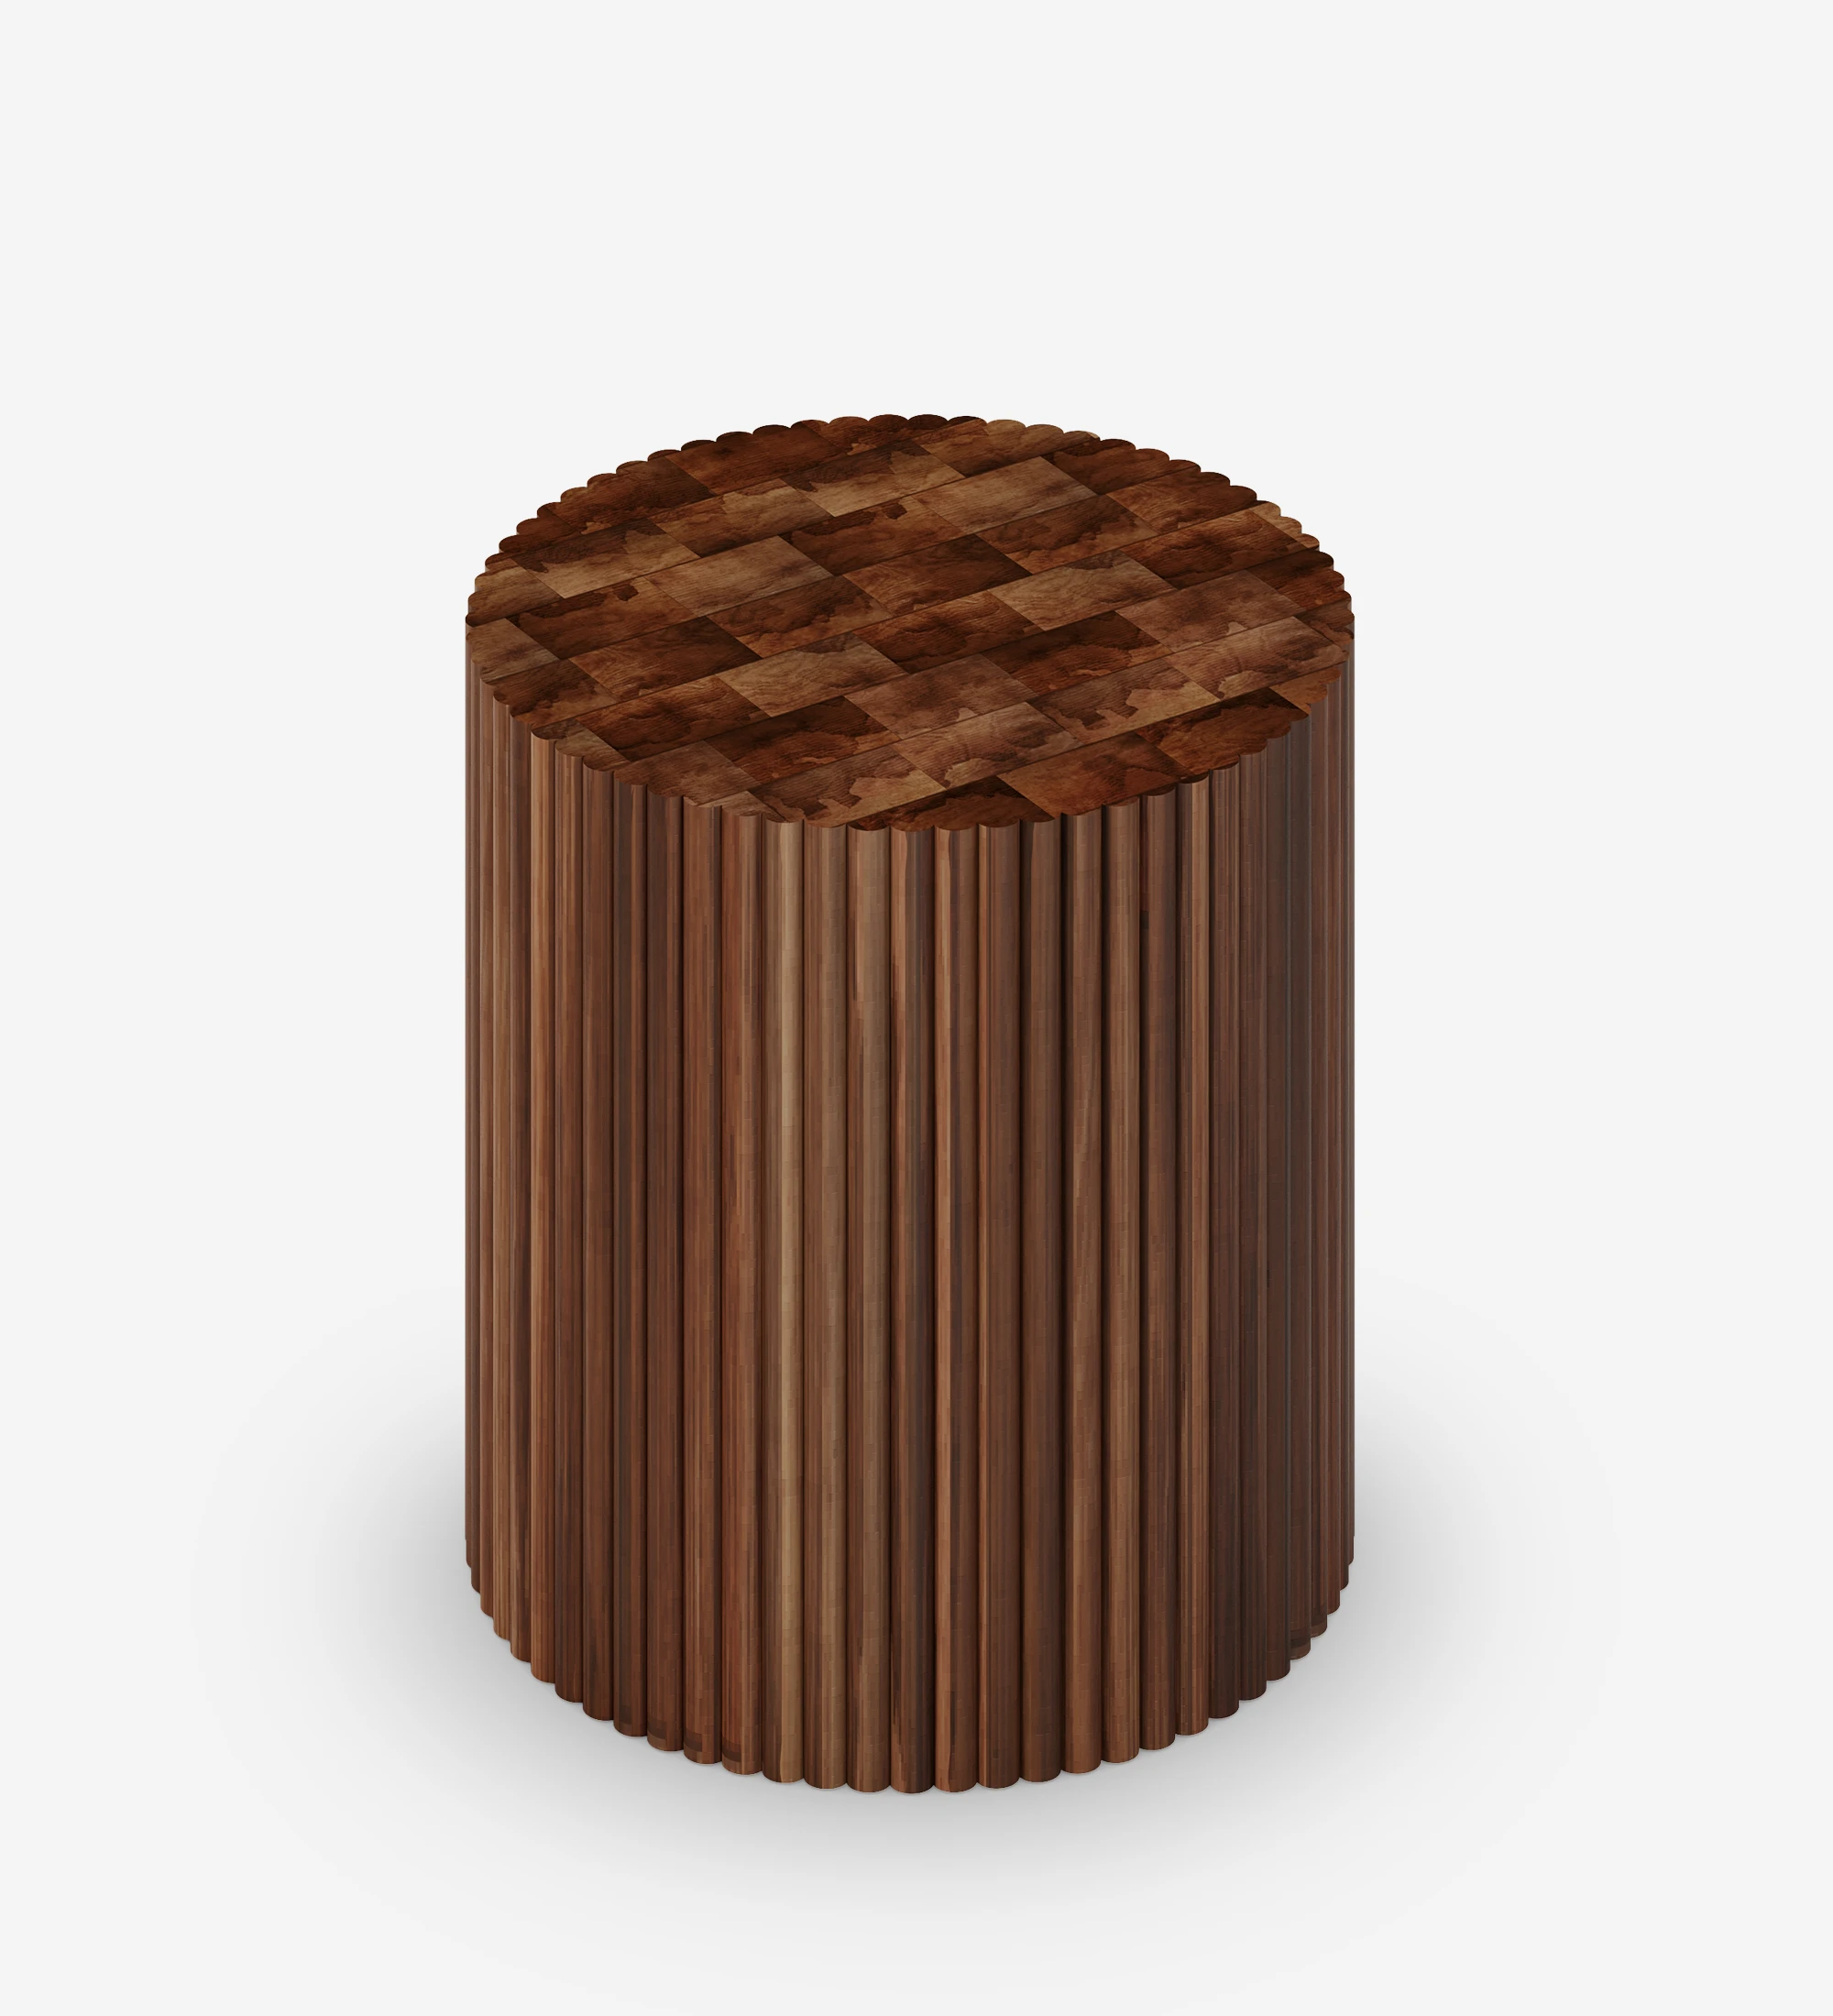 Mesa apoio Évora redonda em madeira cor nogueira.